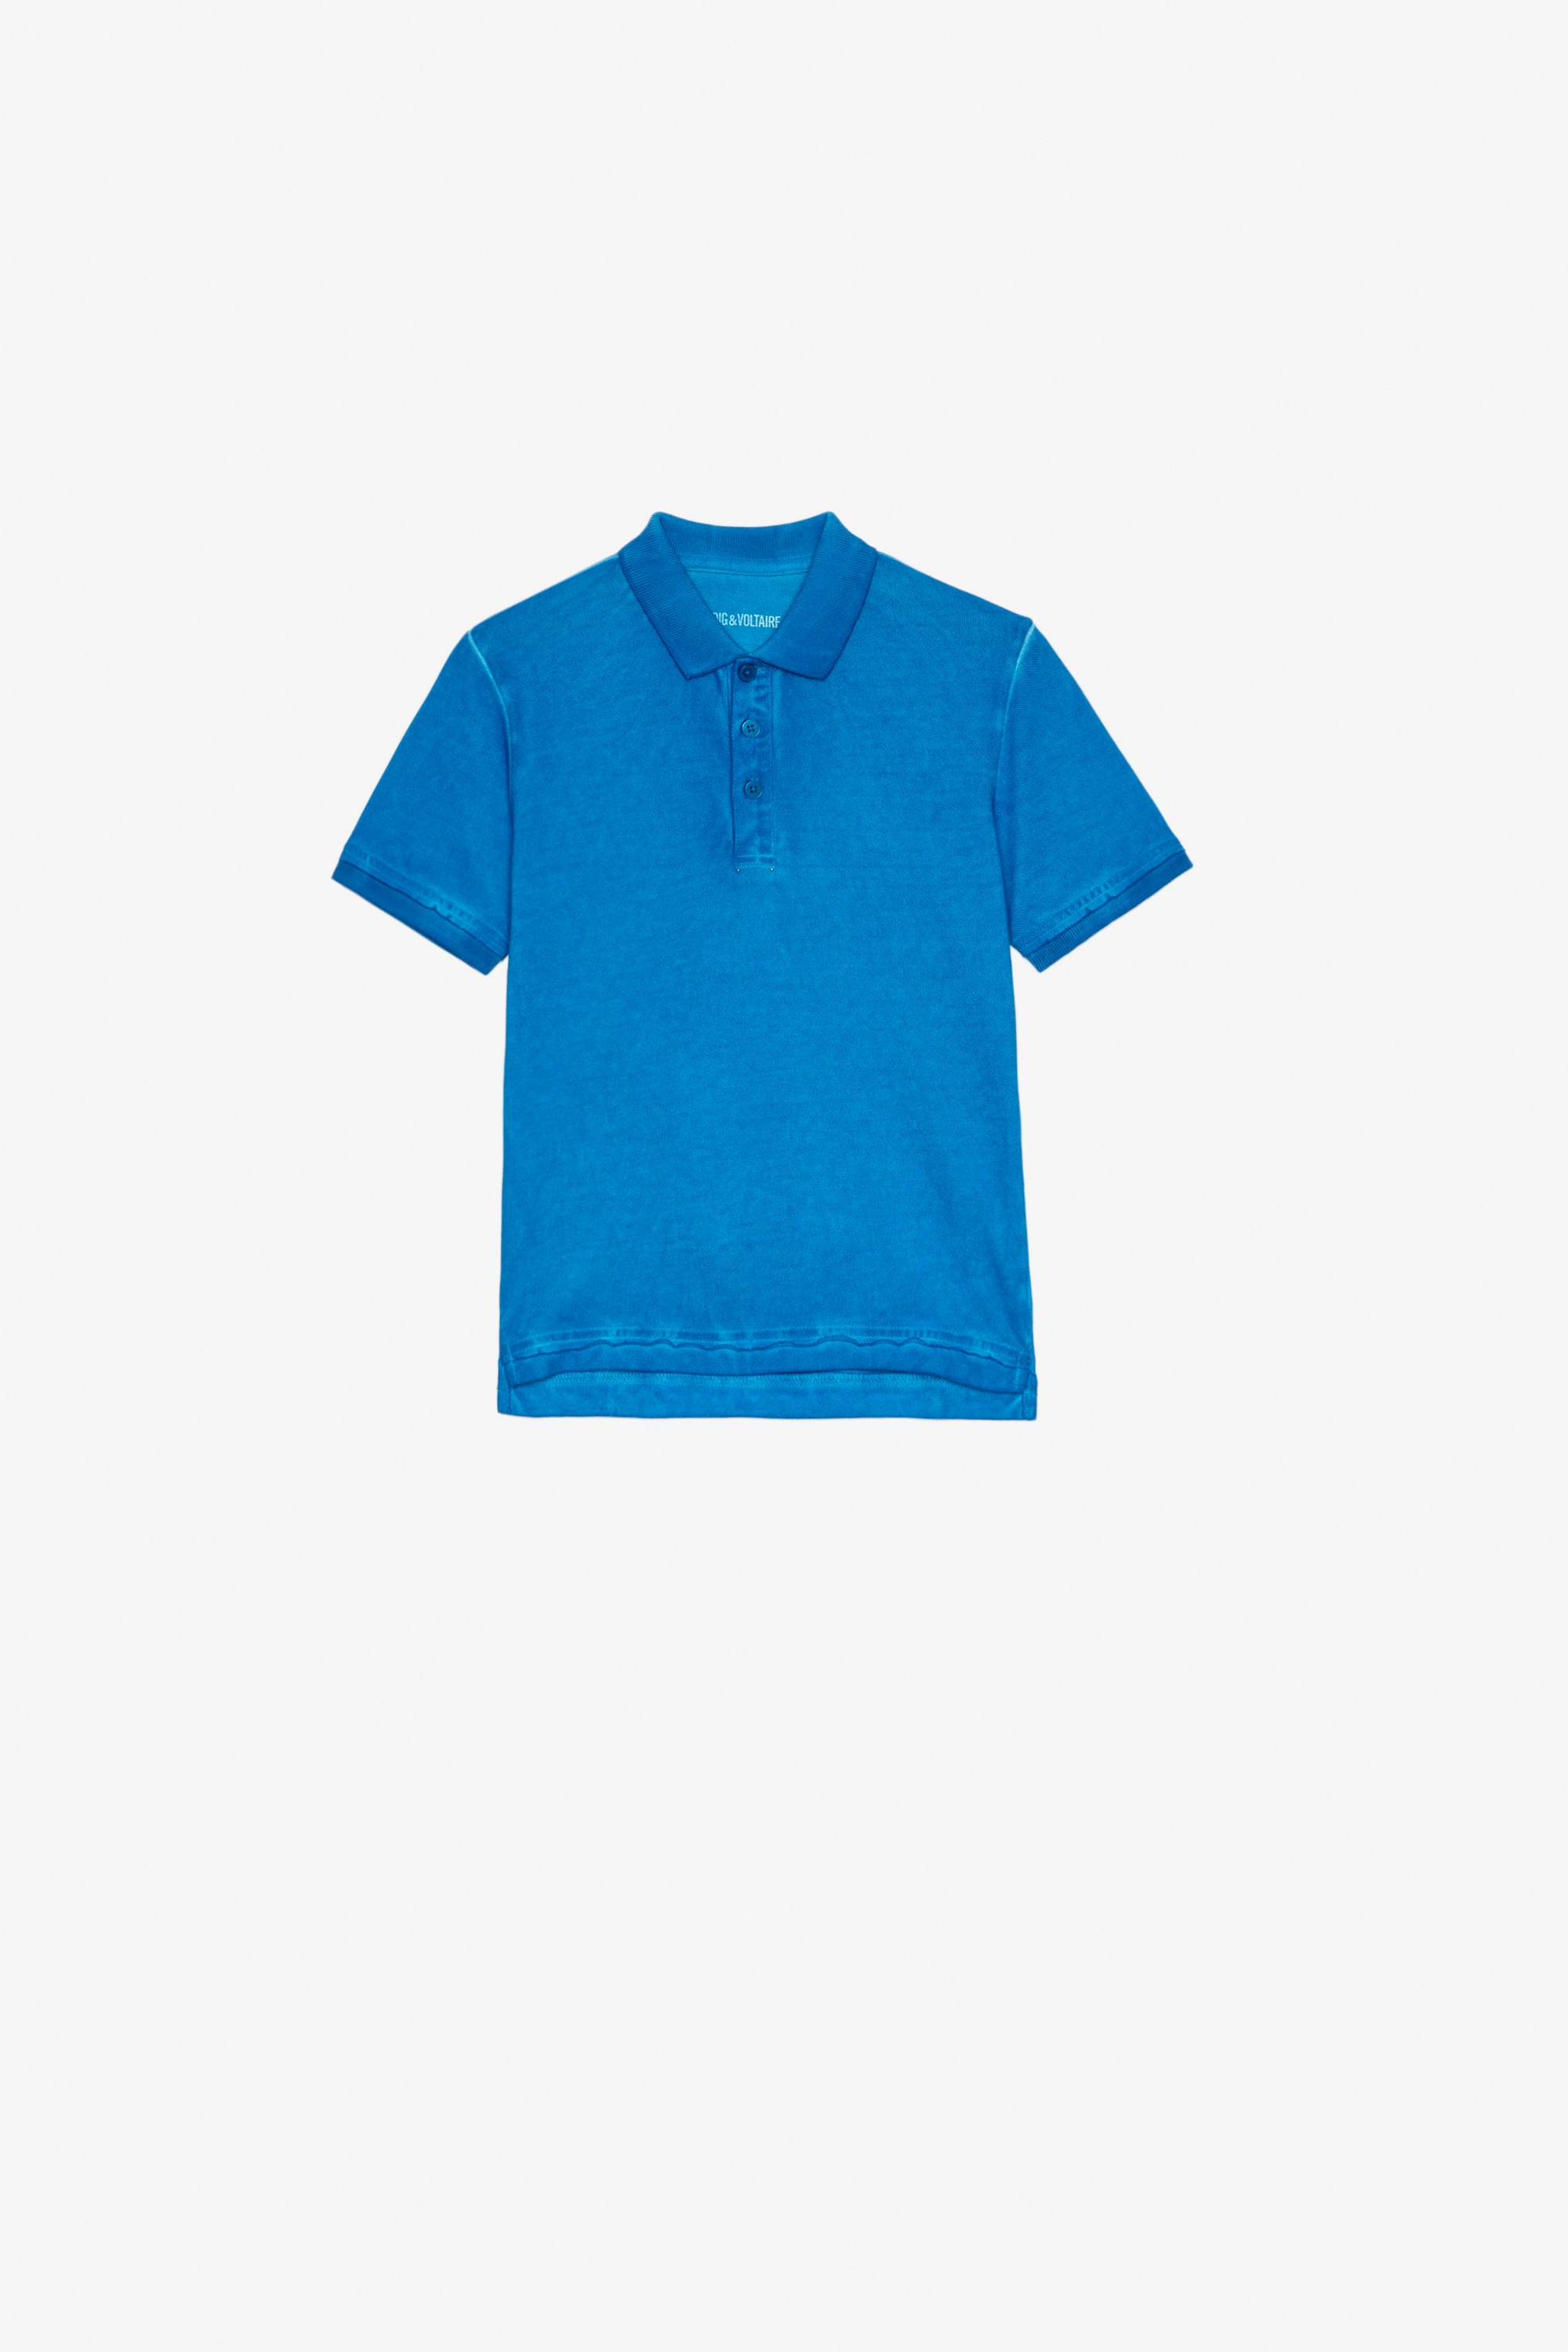 Trot アンファン Polo シャツ ブルーコットンポロシャツ 背中にイラスト キッズ